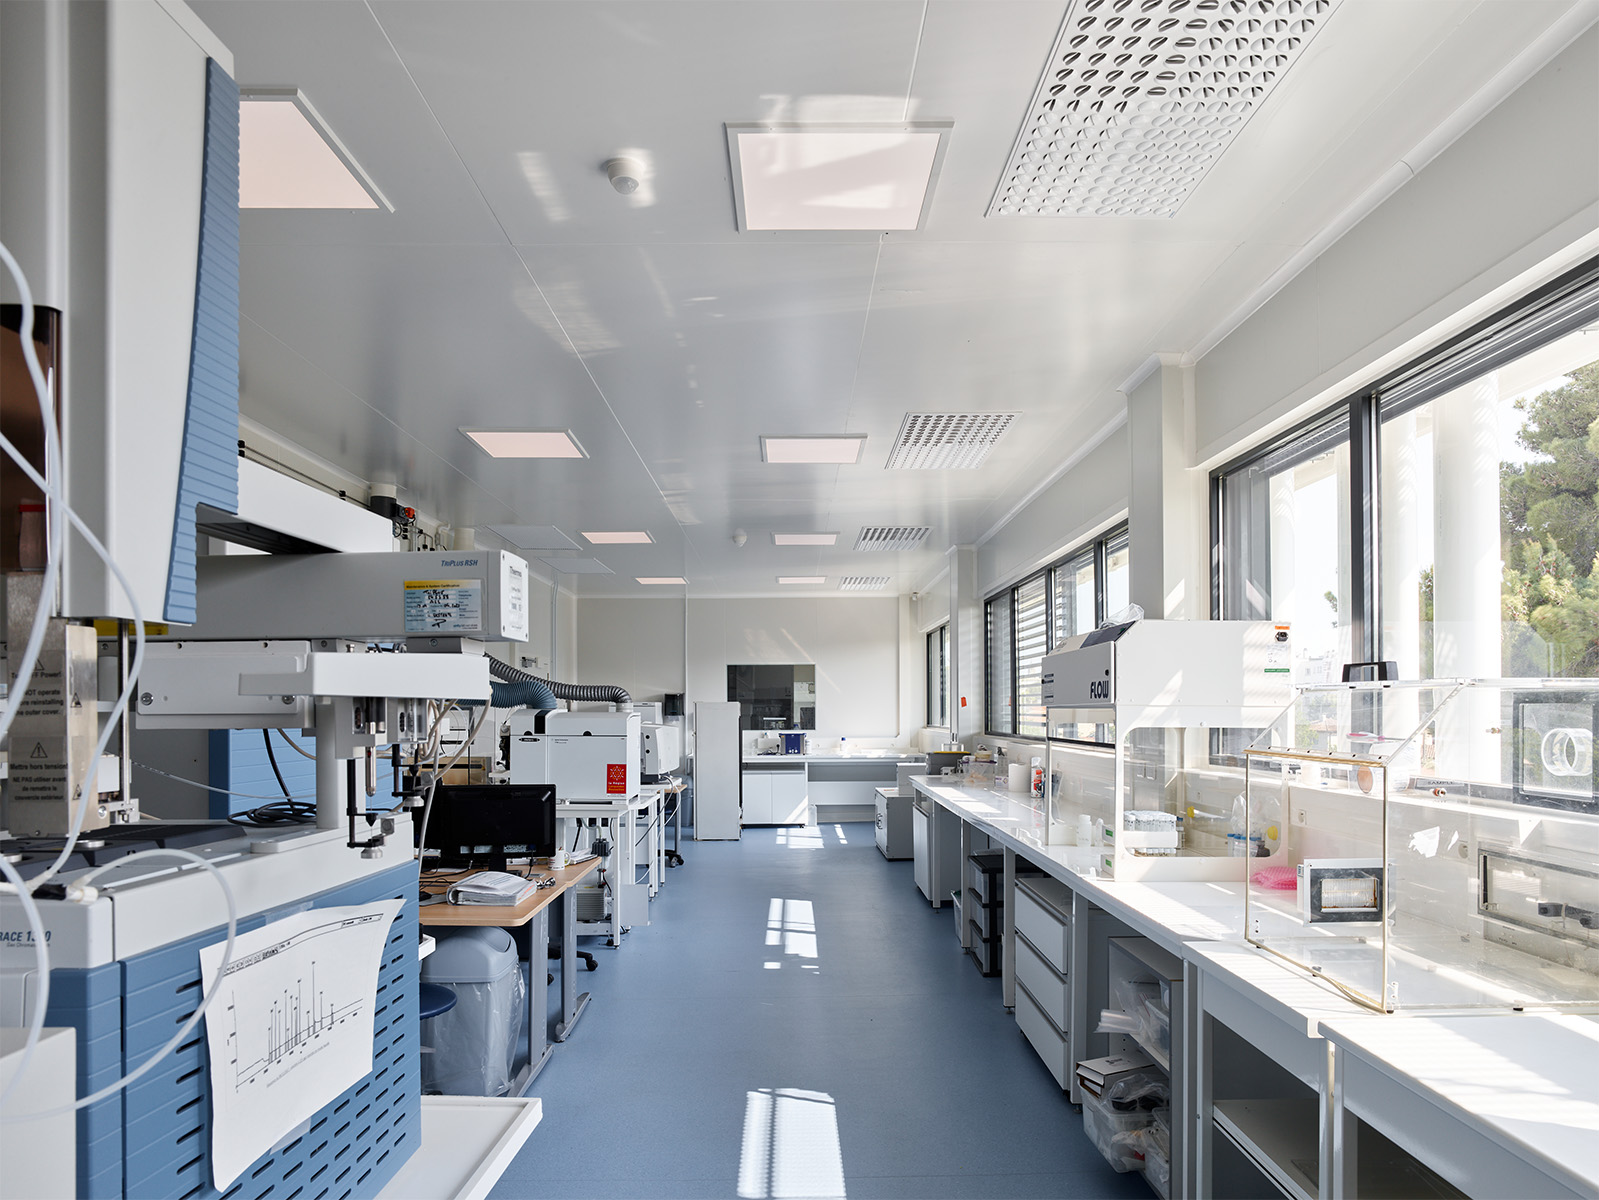 Photographie d'un laboratoire avec divers machines et tuyaux, sol bleu gris et mur et plafond blanc, les fenêtres en bandeaux apportent beaucoup de lumière